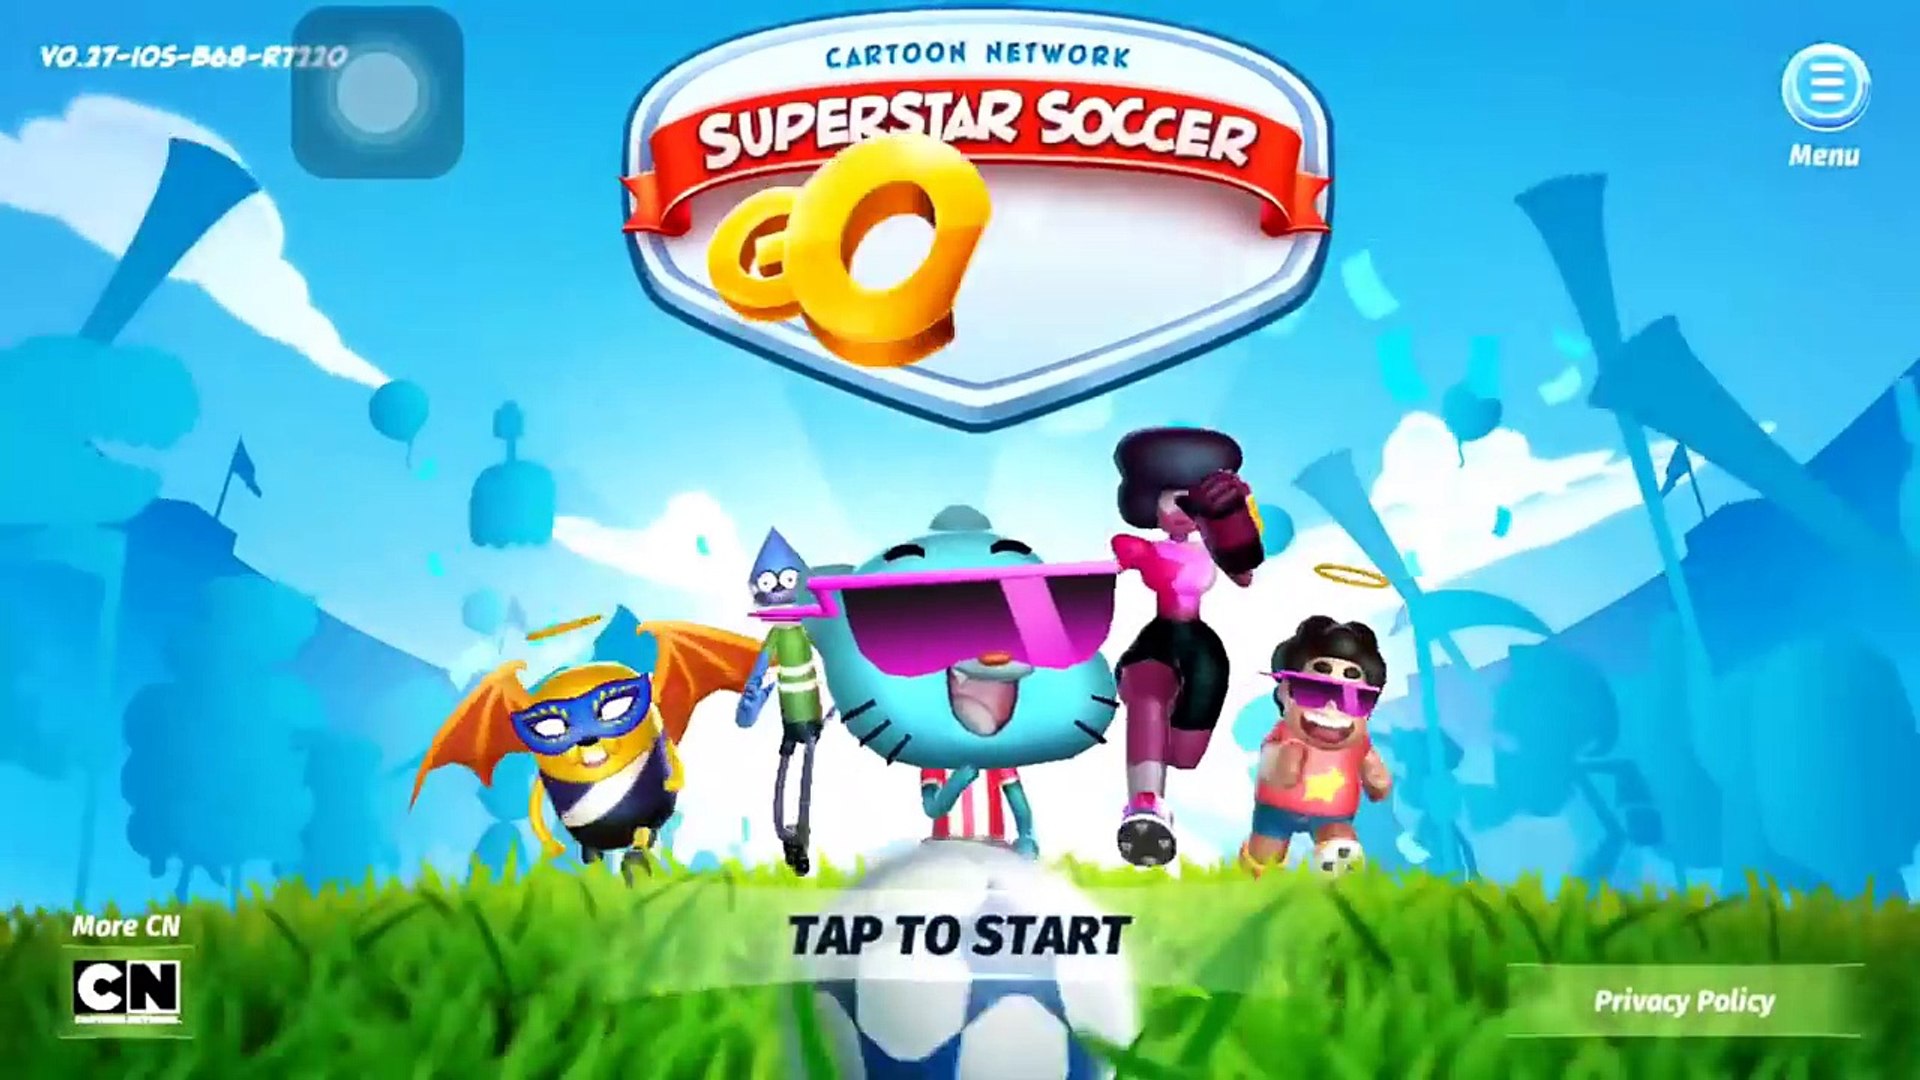 Cartoon Network Superstar Soccer Goal [CN] - GUMBALL VS GARNET, STEVEN, ANAIS and ICE BEAR